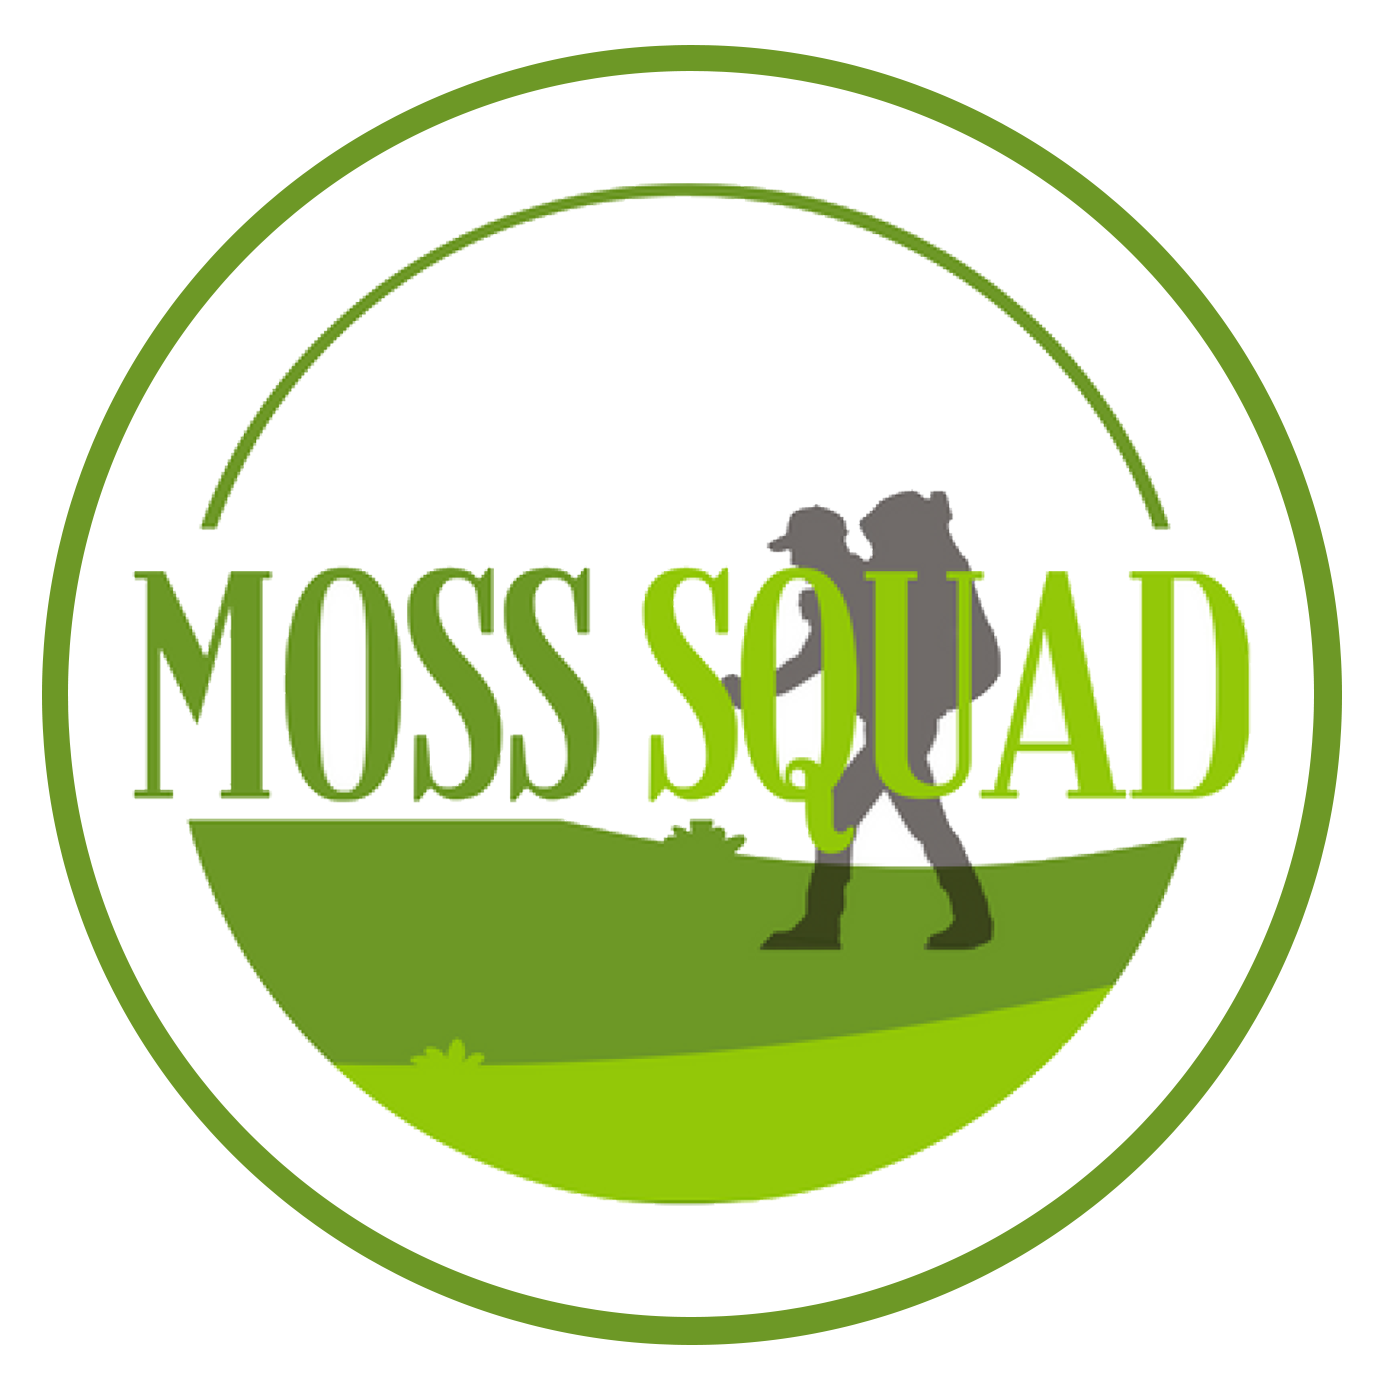 Moss Squad